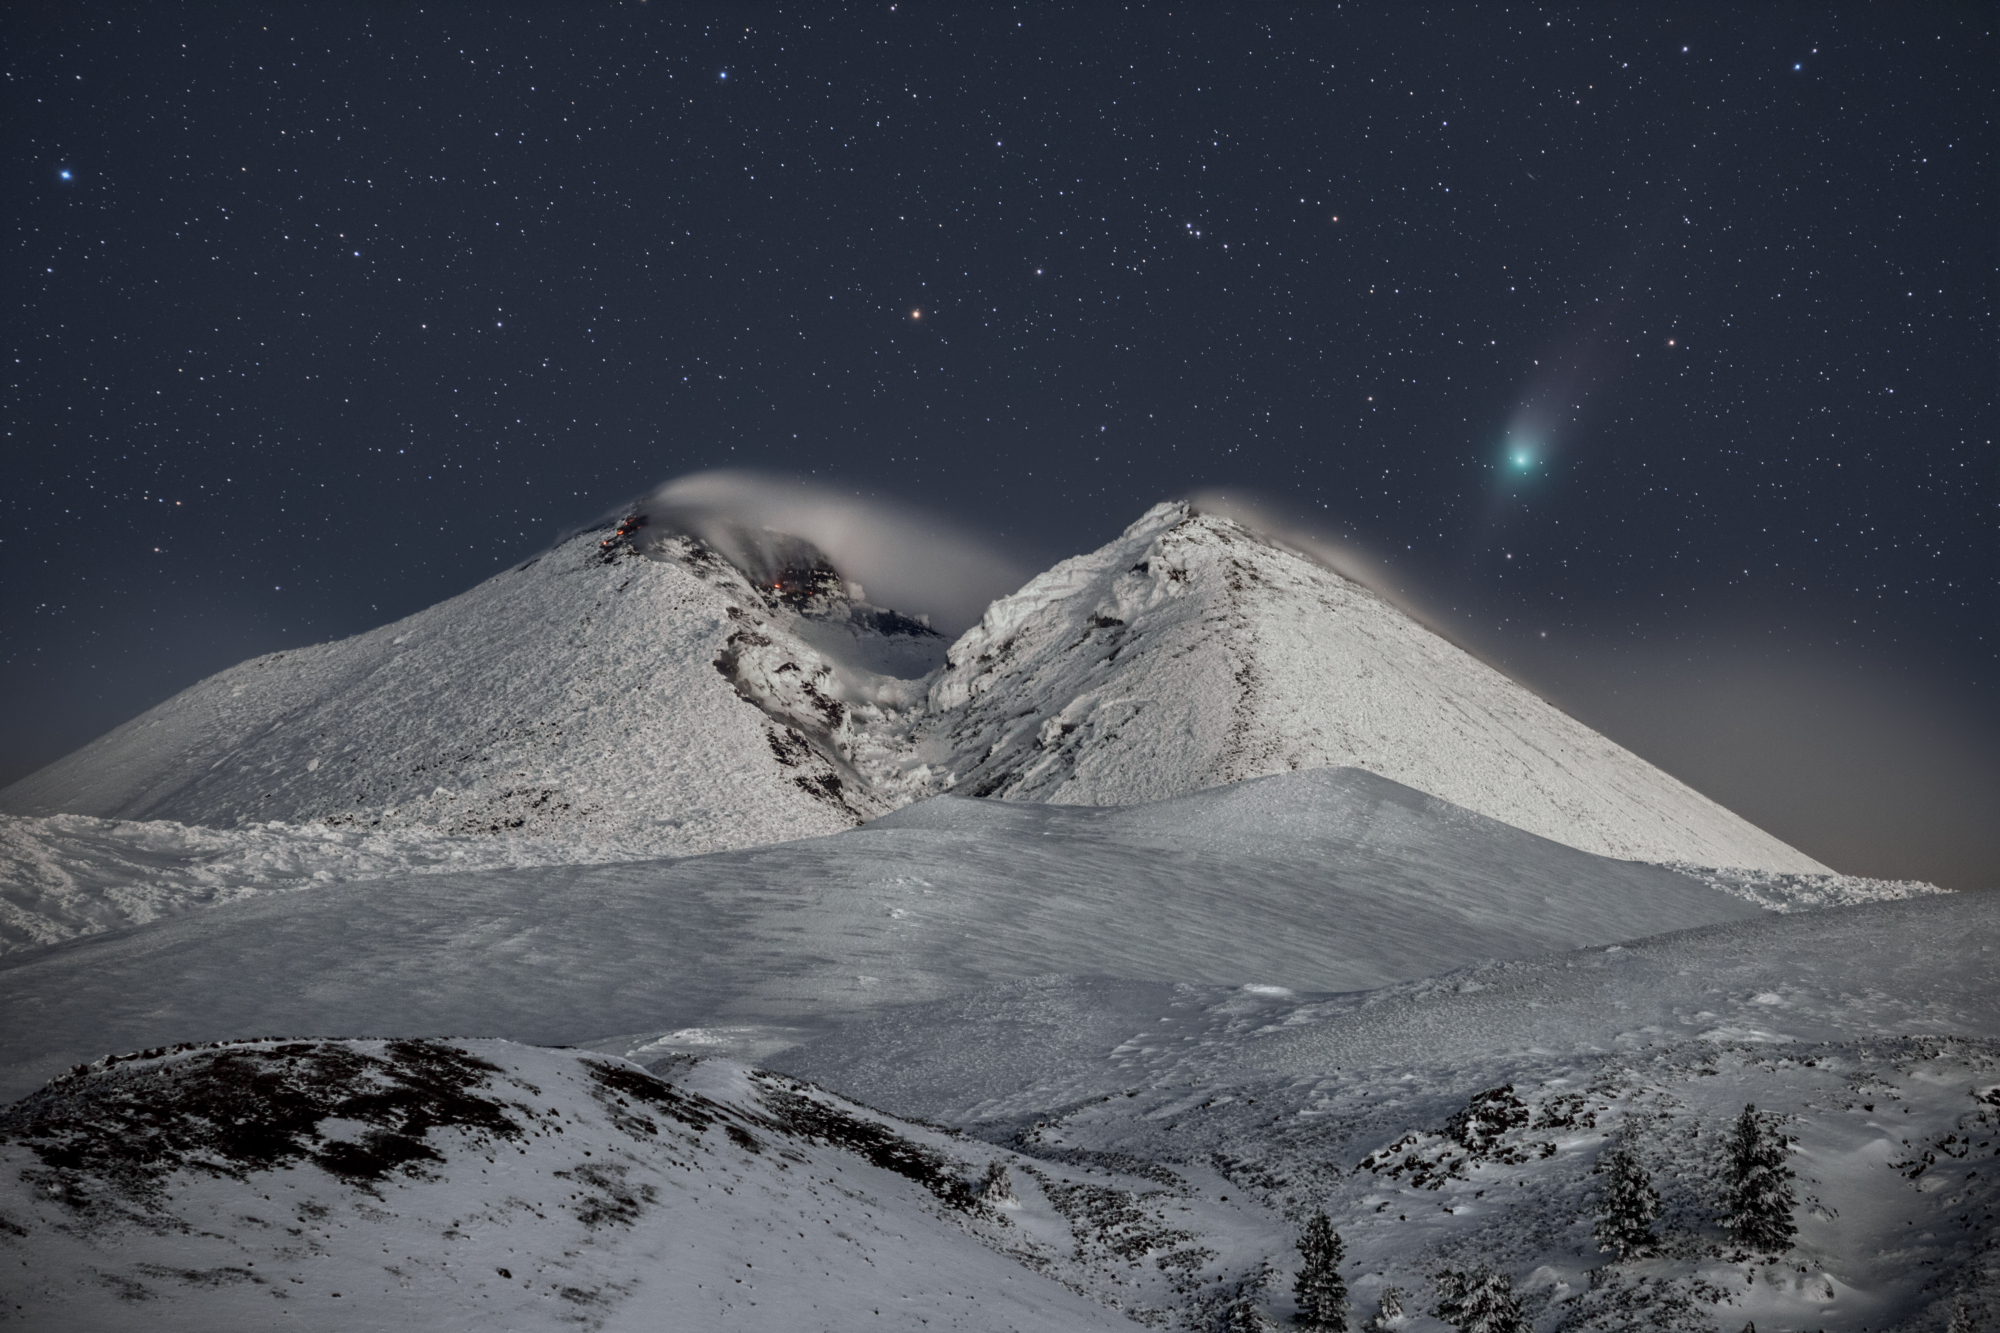 Une comète visible au-dessus d'une montagne enneigée.